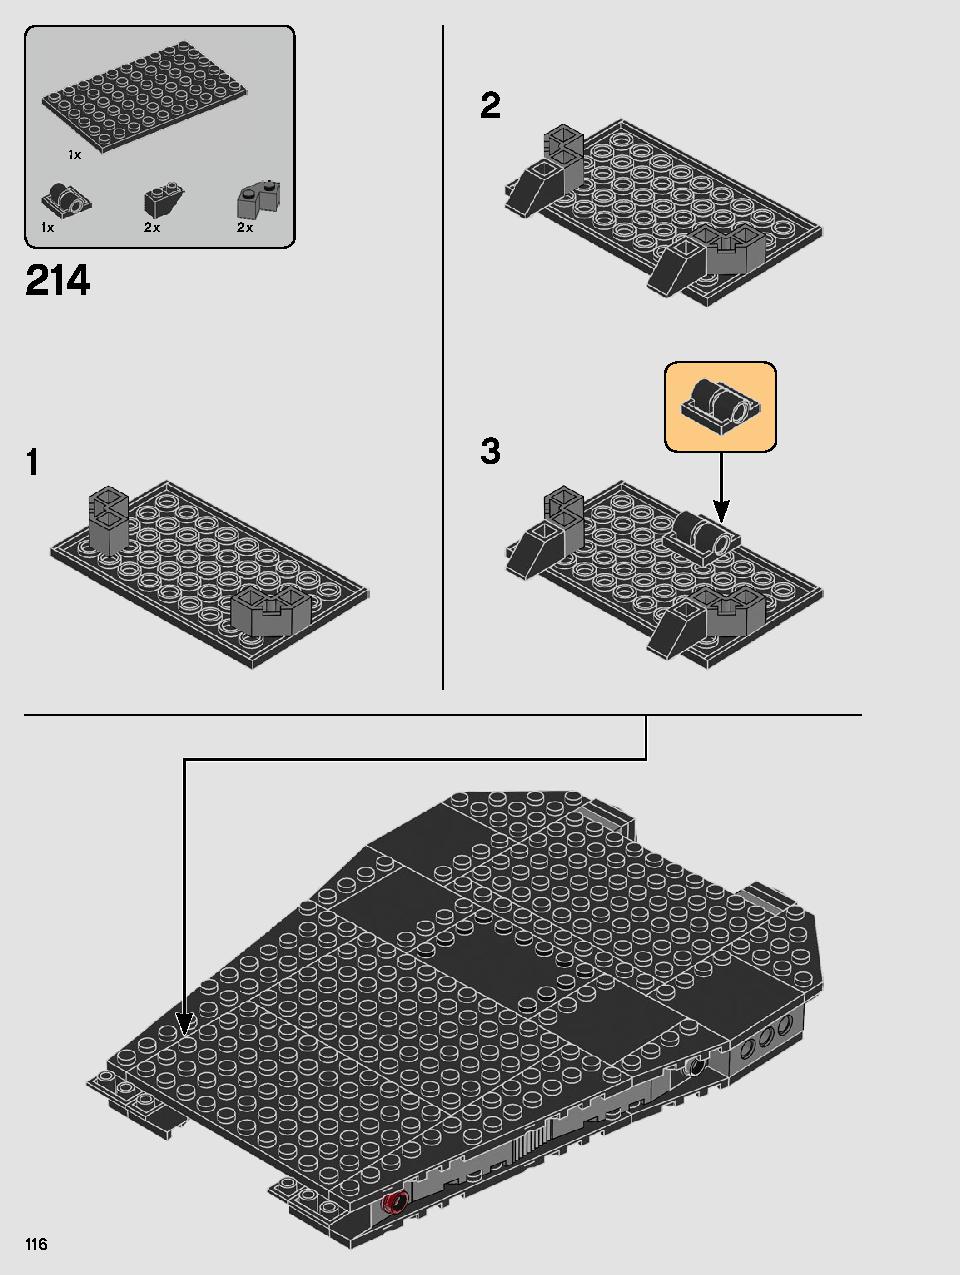 스타워즈 카일로 렌의 셔틀™ 75256 레고 세트 제품정보 레고 조립설명서 116 page